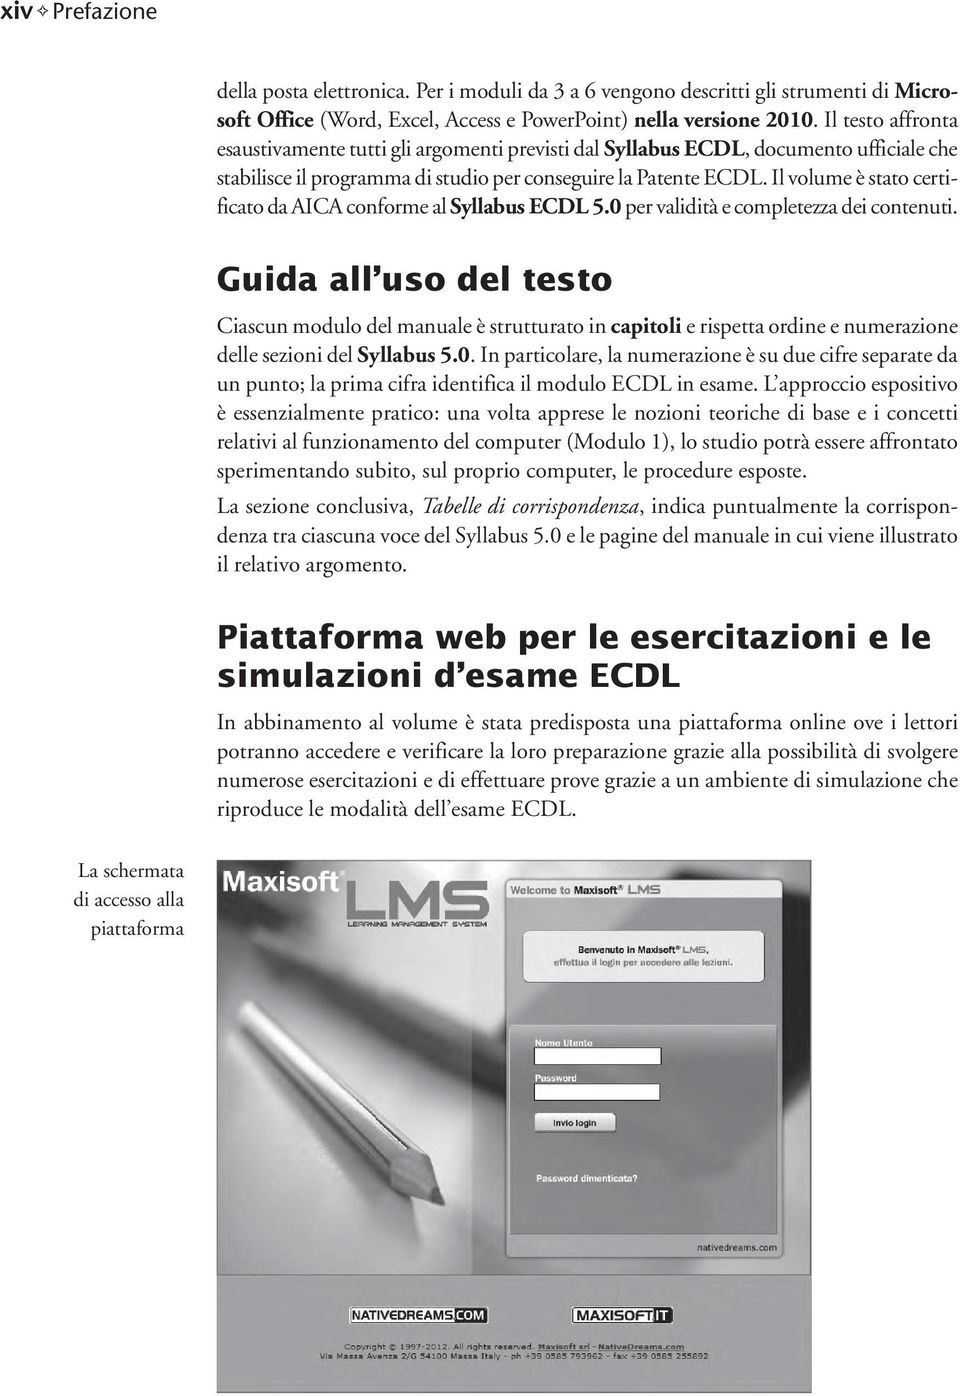 Il volume è stato certificato da AICA conforme al Syllabus ECDL 5.0 per validità e completezza dei contenuti.